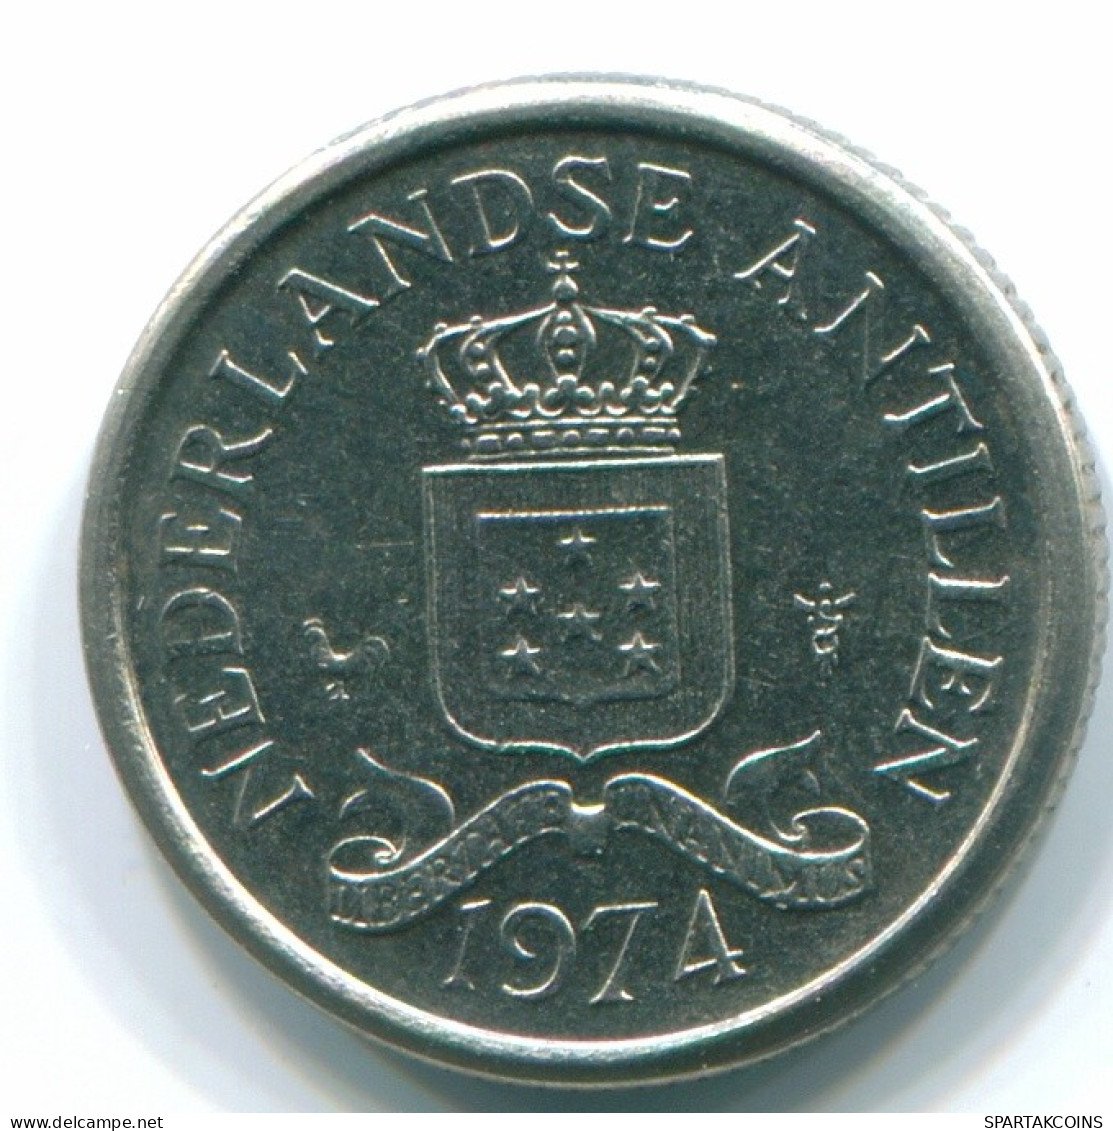 10 CENTS 1974 NETHERLANDS ANTILLES Nickel Colonial Coin #S13495.U.A - Antillas Neerlandesas